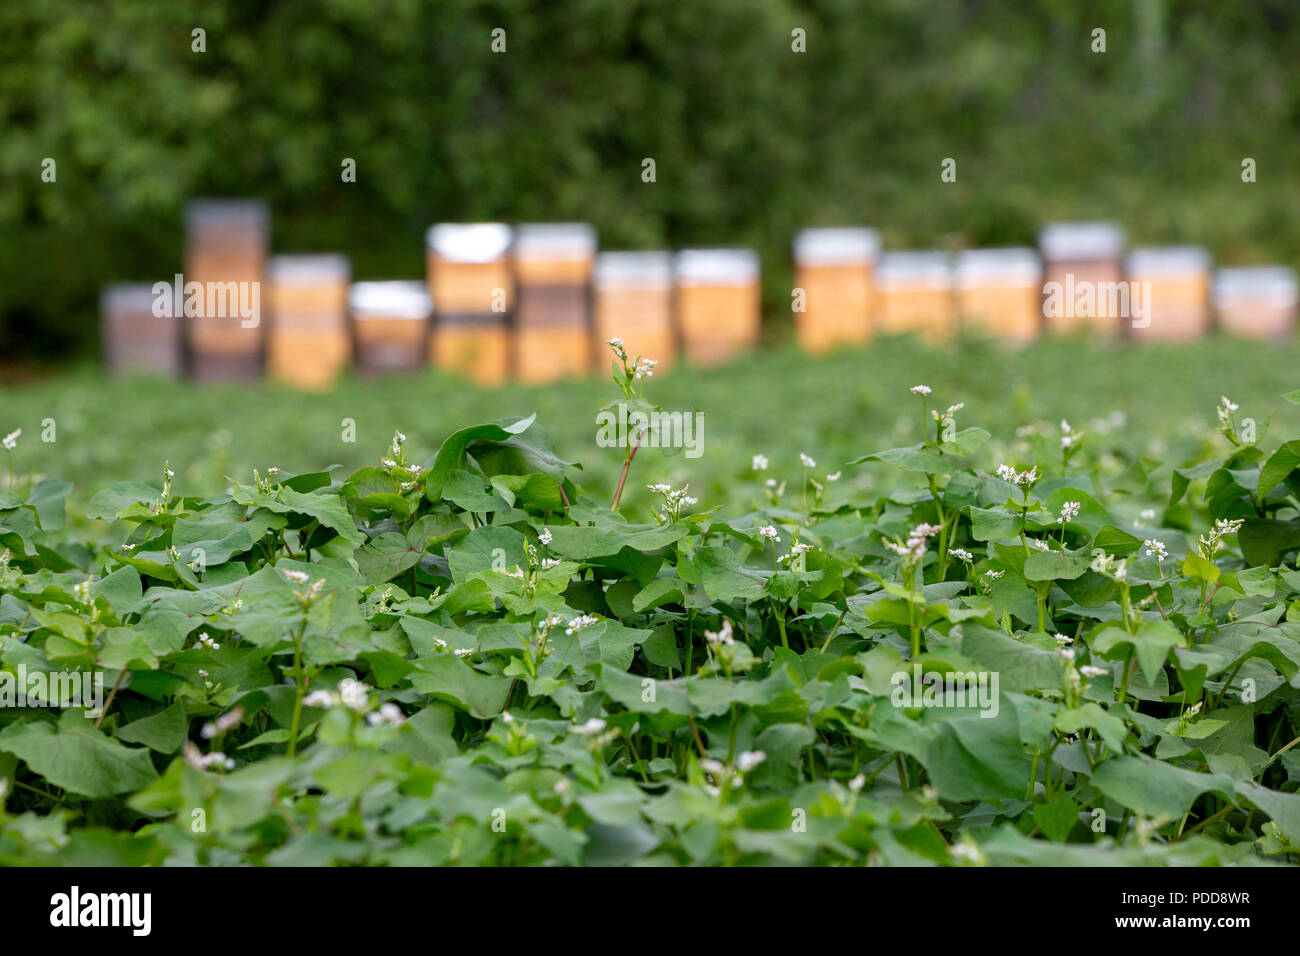 Comune - di grano saraceno Fagopyrum esculentum - con alveari in background per impollinazione e la produzione di miele. Foto Stock